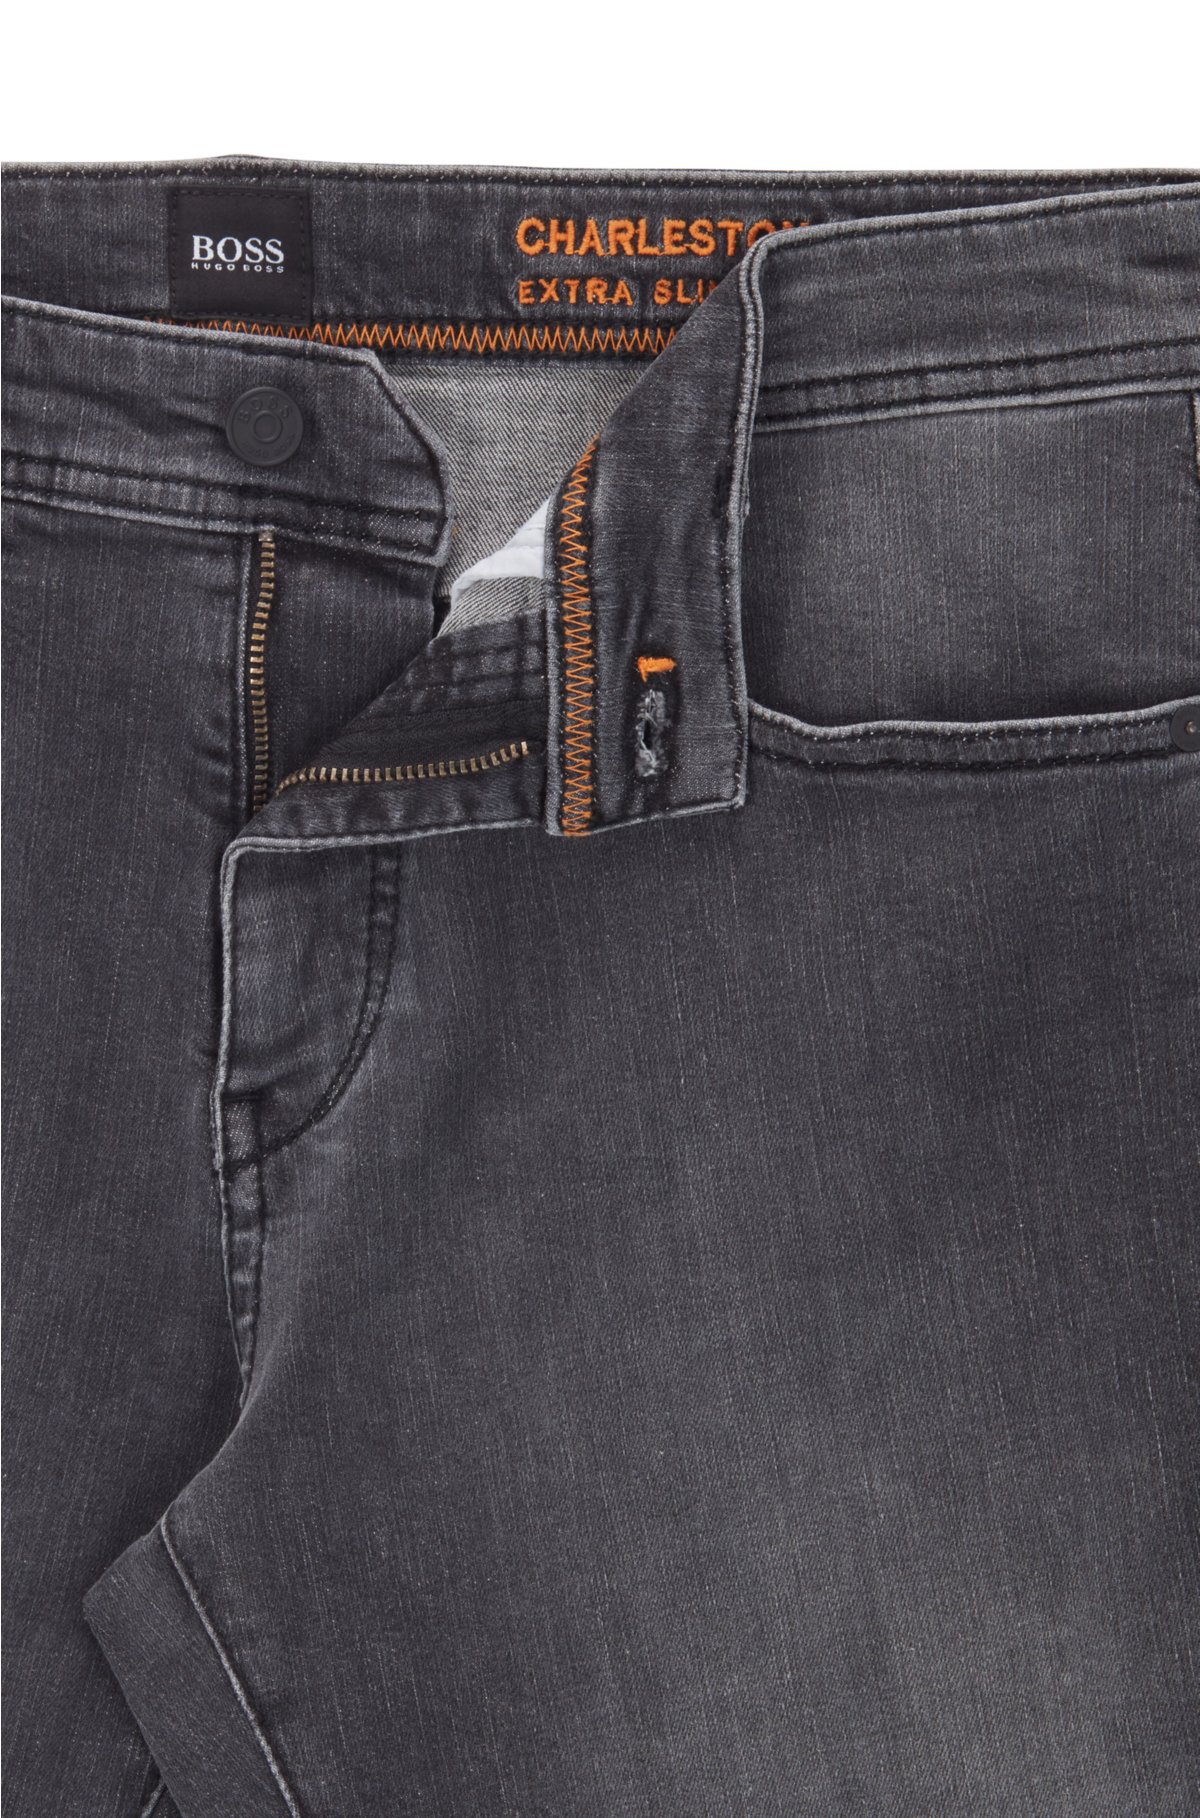 dør spejl Learner emne BOSS - Skinny-fit jeans in black super-stretch denim